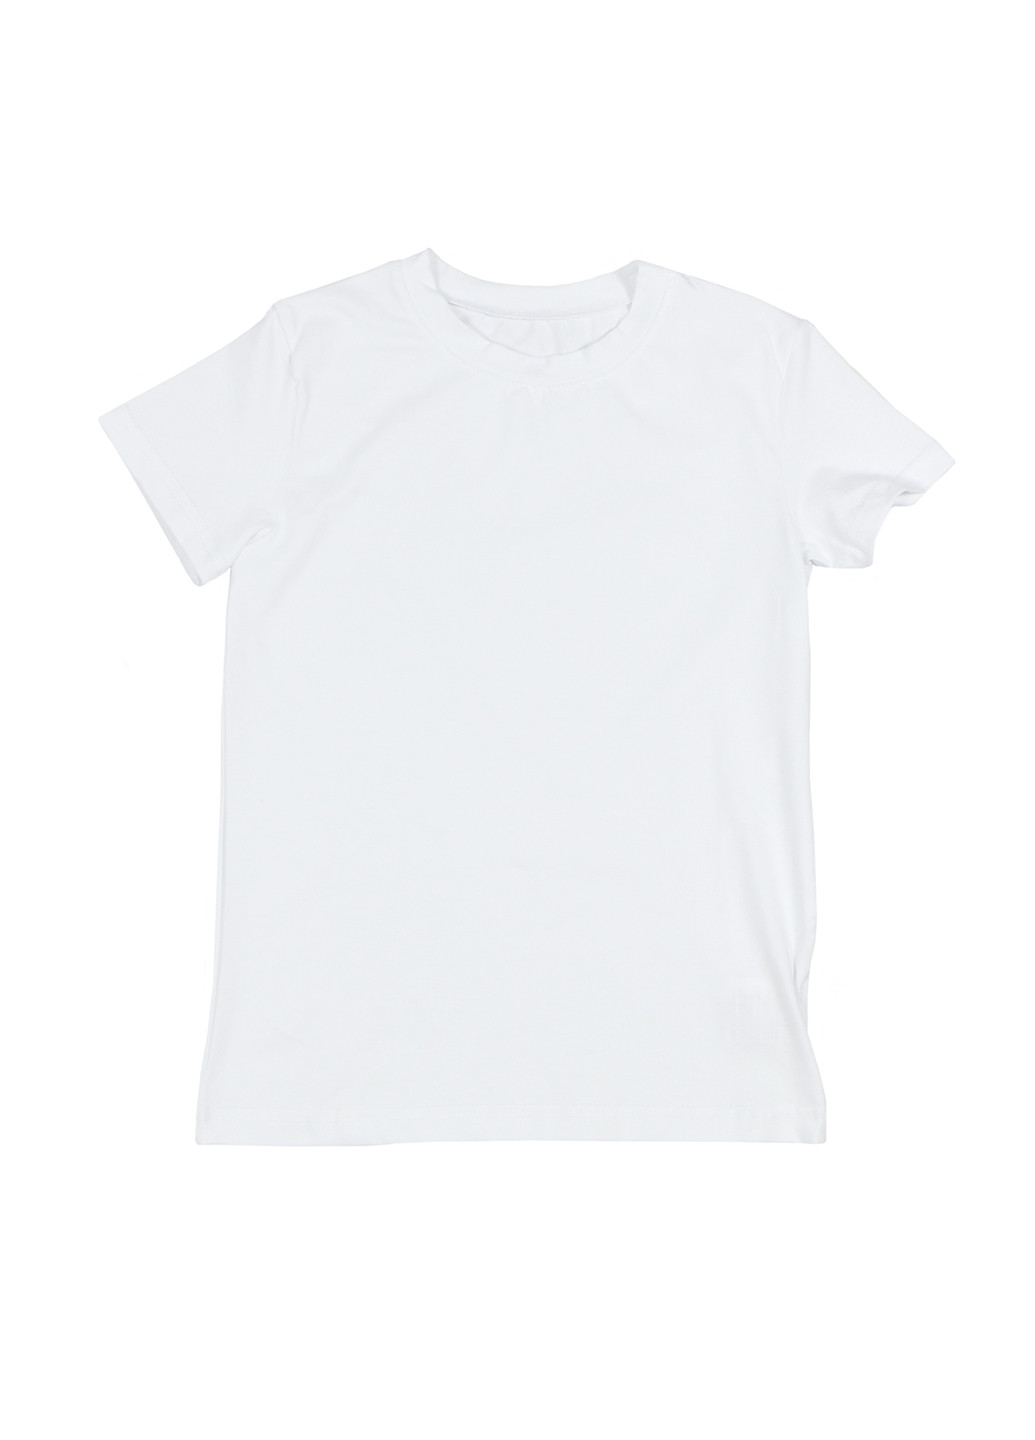 Белая летняя футболка с коротким рукавом DaNa-kids